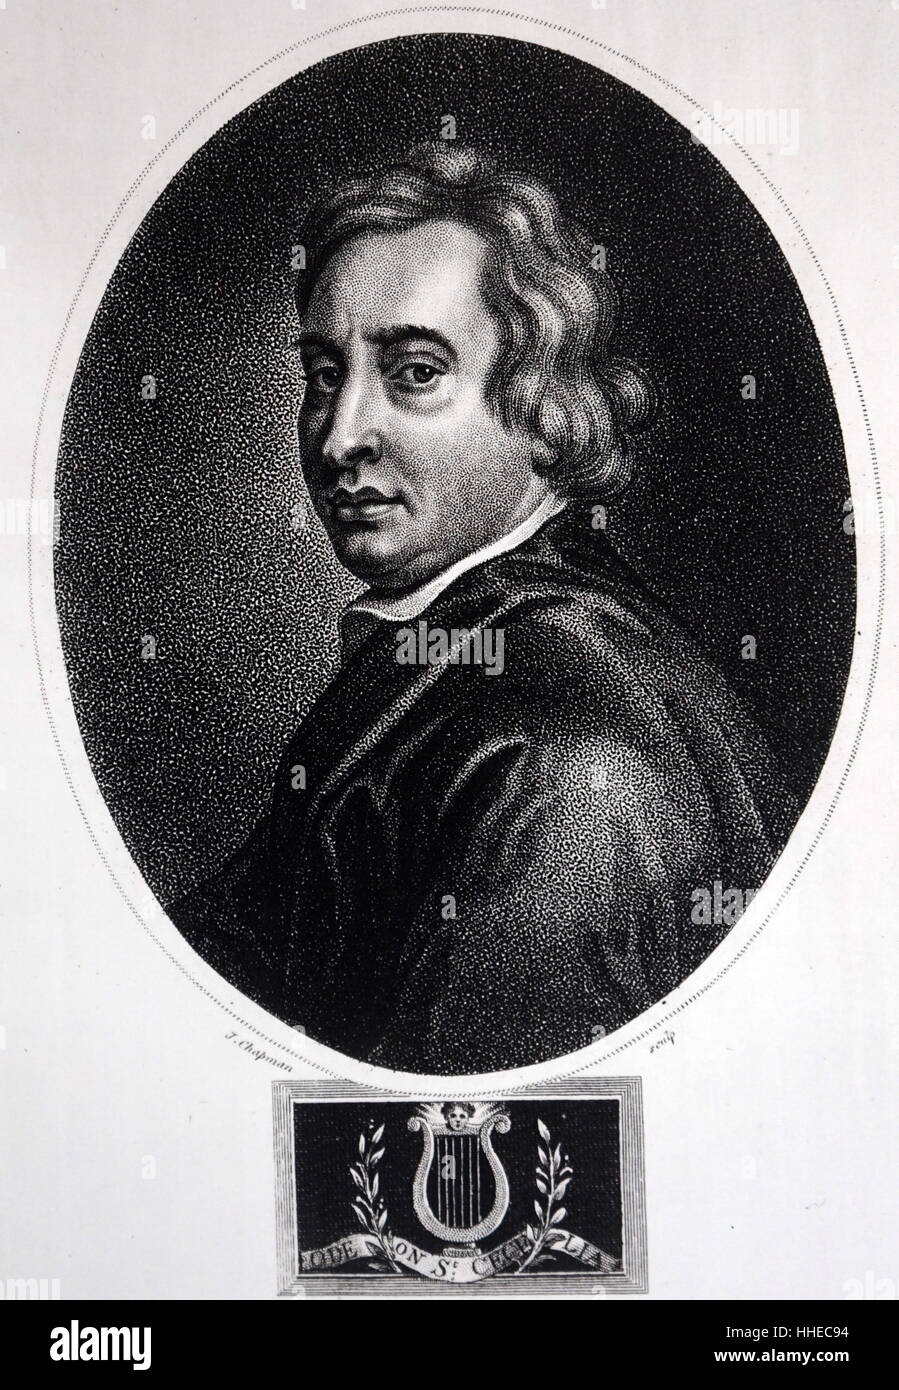 John Dryden ( 1631 - 1700) anglais, poète, critique littéraire, traducteur et dramaturge qui a été faite de l'Angleterre premier poète lauréat en 1668. Il est considéré comme dominant la vie littéraire de la restauration en Angleterre Banque D'Images